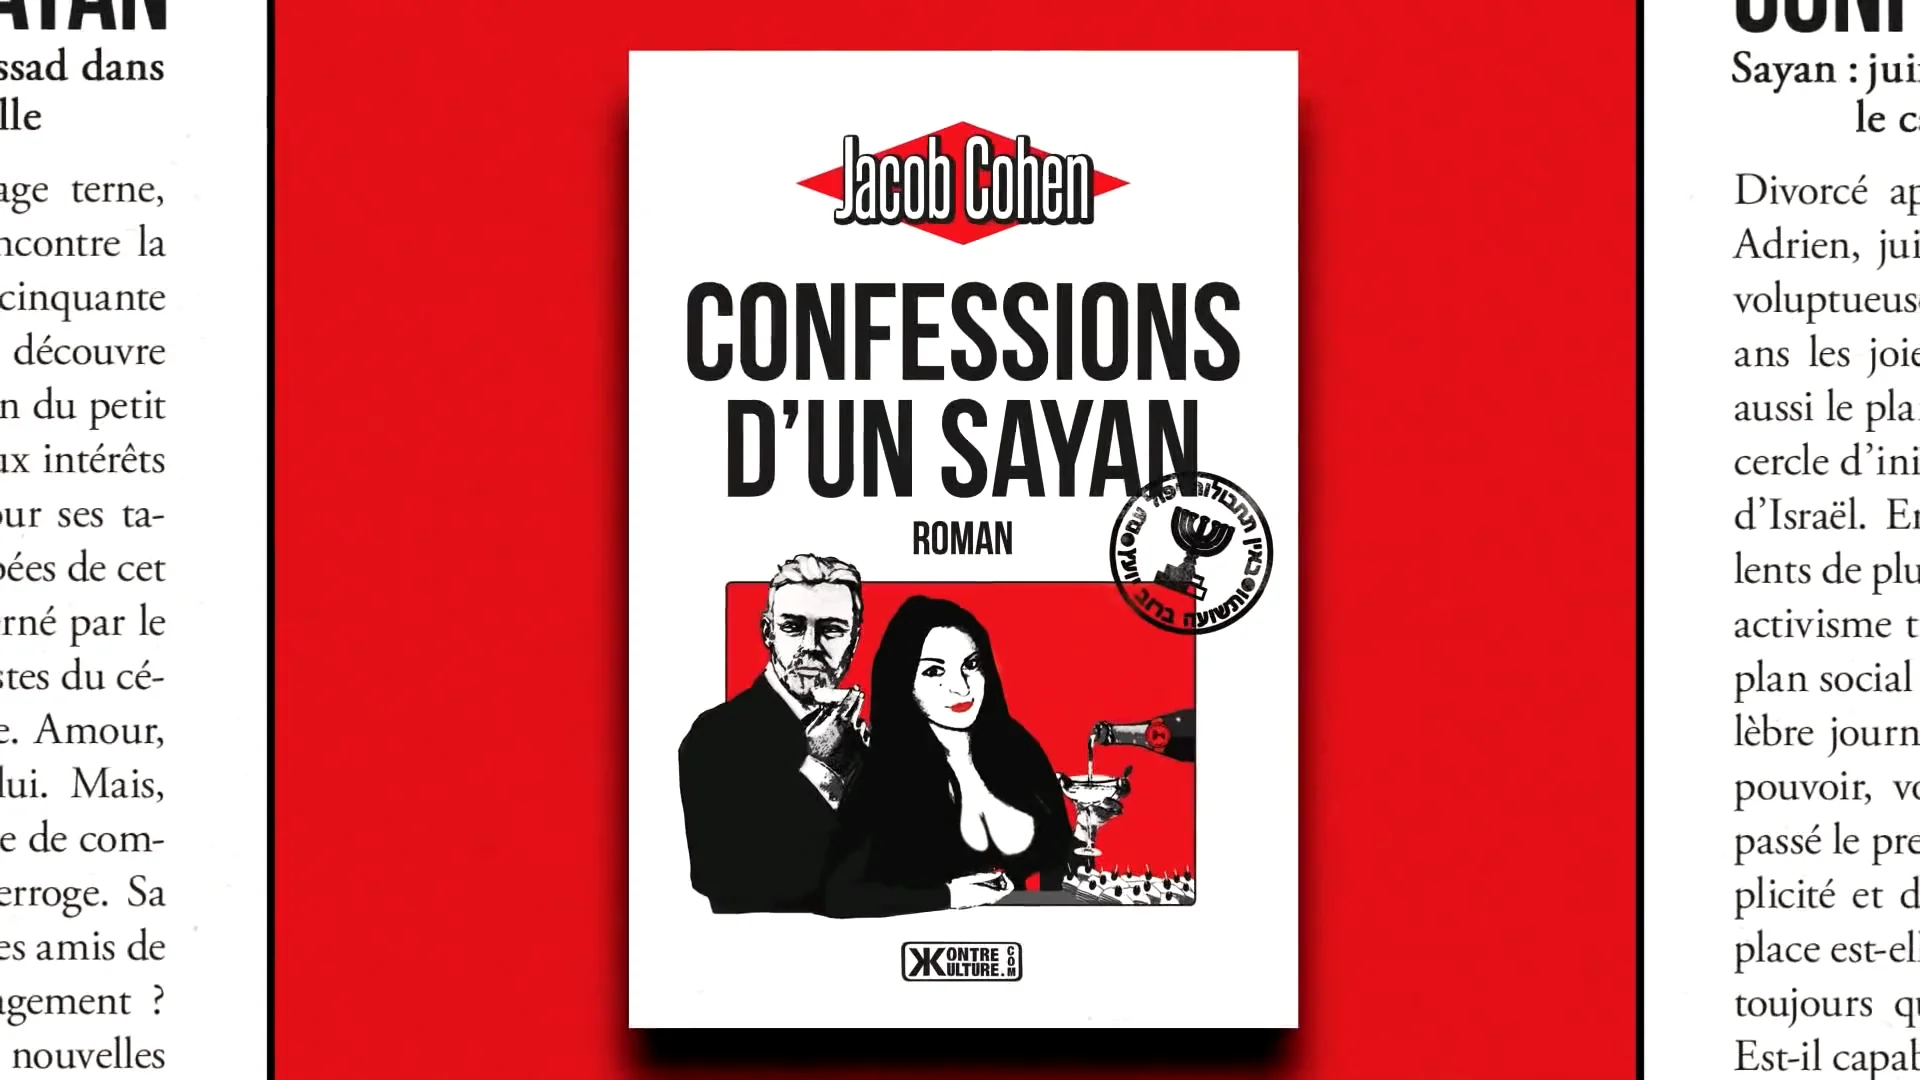 Alain Soral présente – Confessions d’un sayan de Jacob Cohen